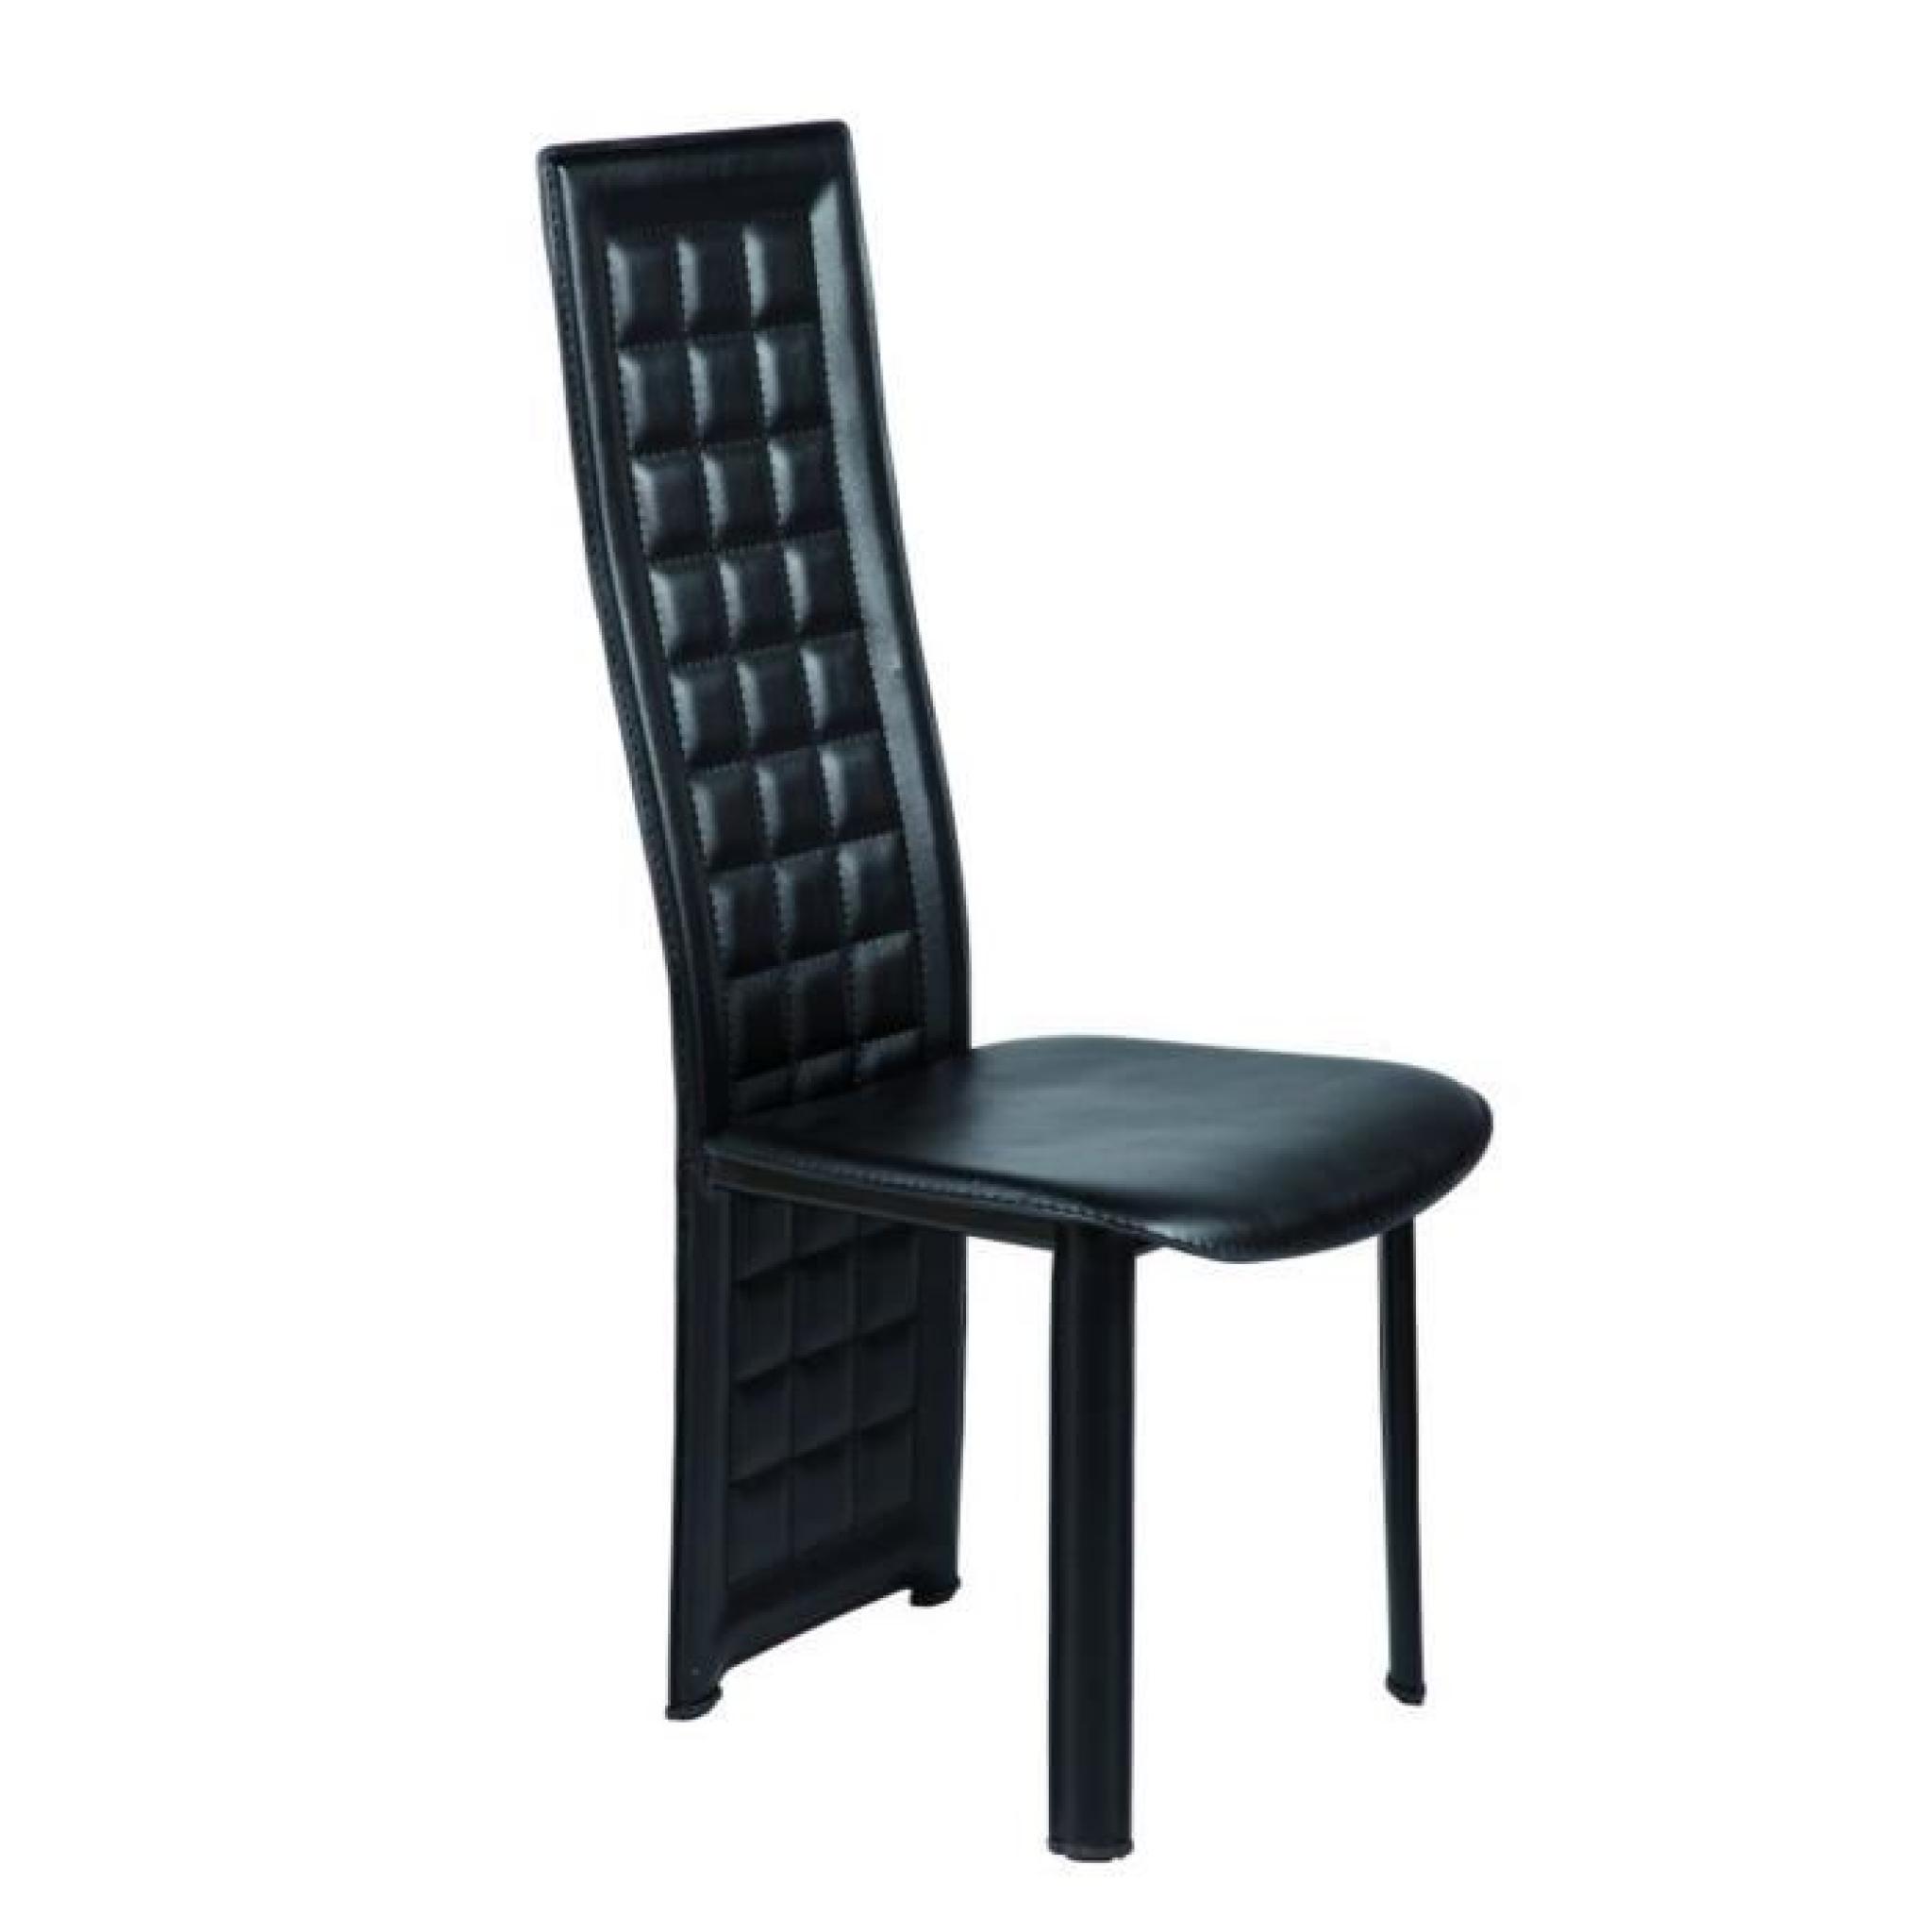 Chaise noir en PVC